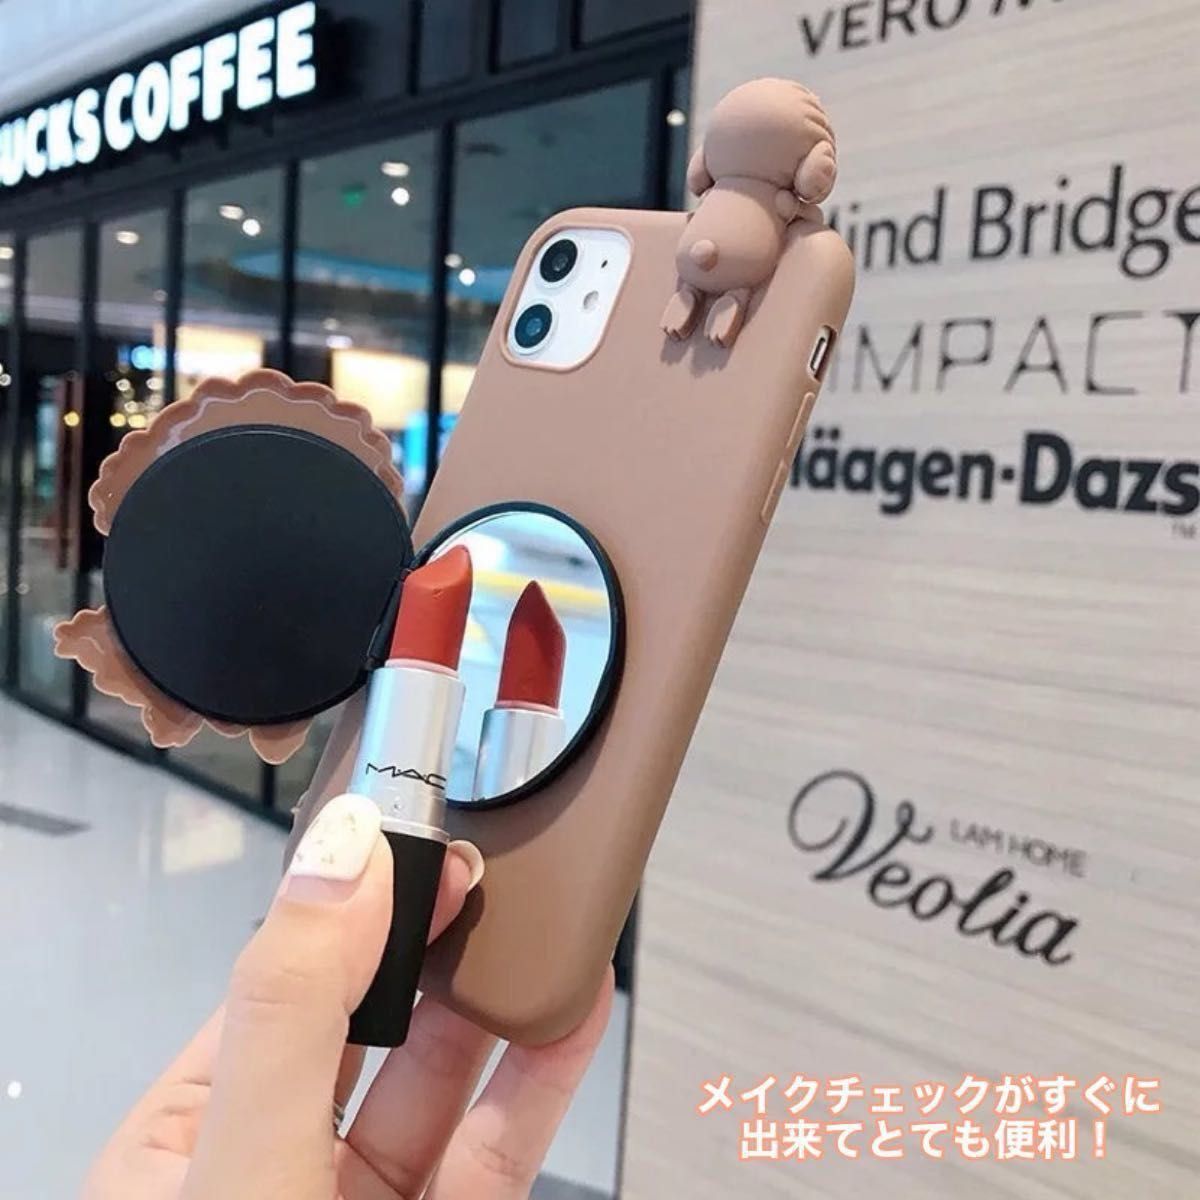 【※新品】iPhoneケース カバー トイプードル 犬 ブラウン 茶色 鏡 かわいい ミラー付き ハンドストラップ付き